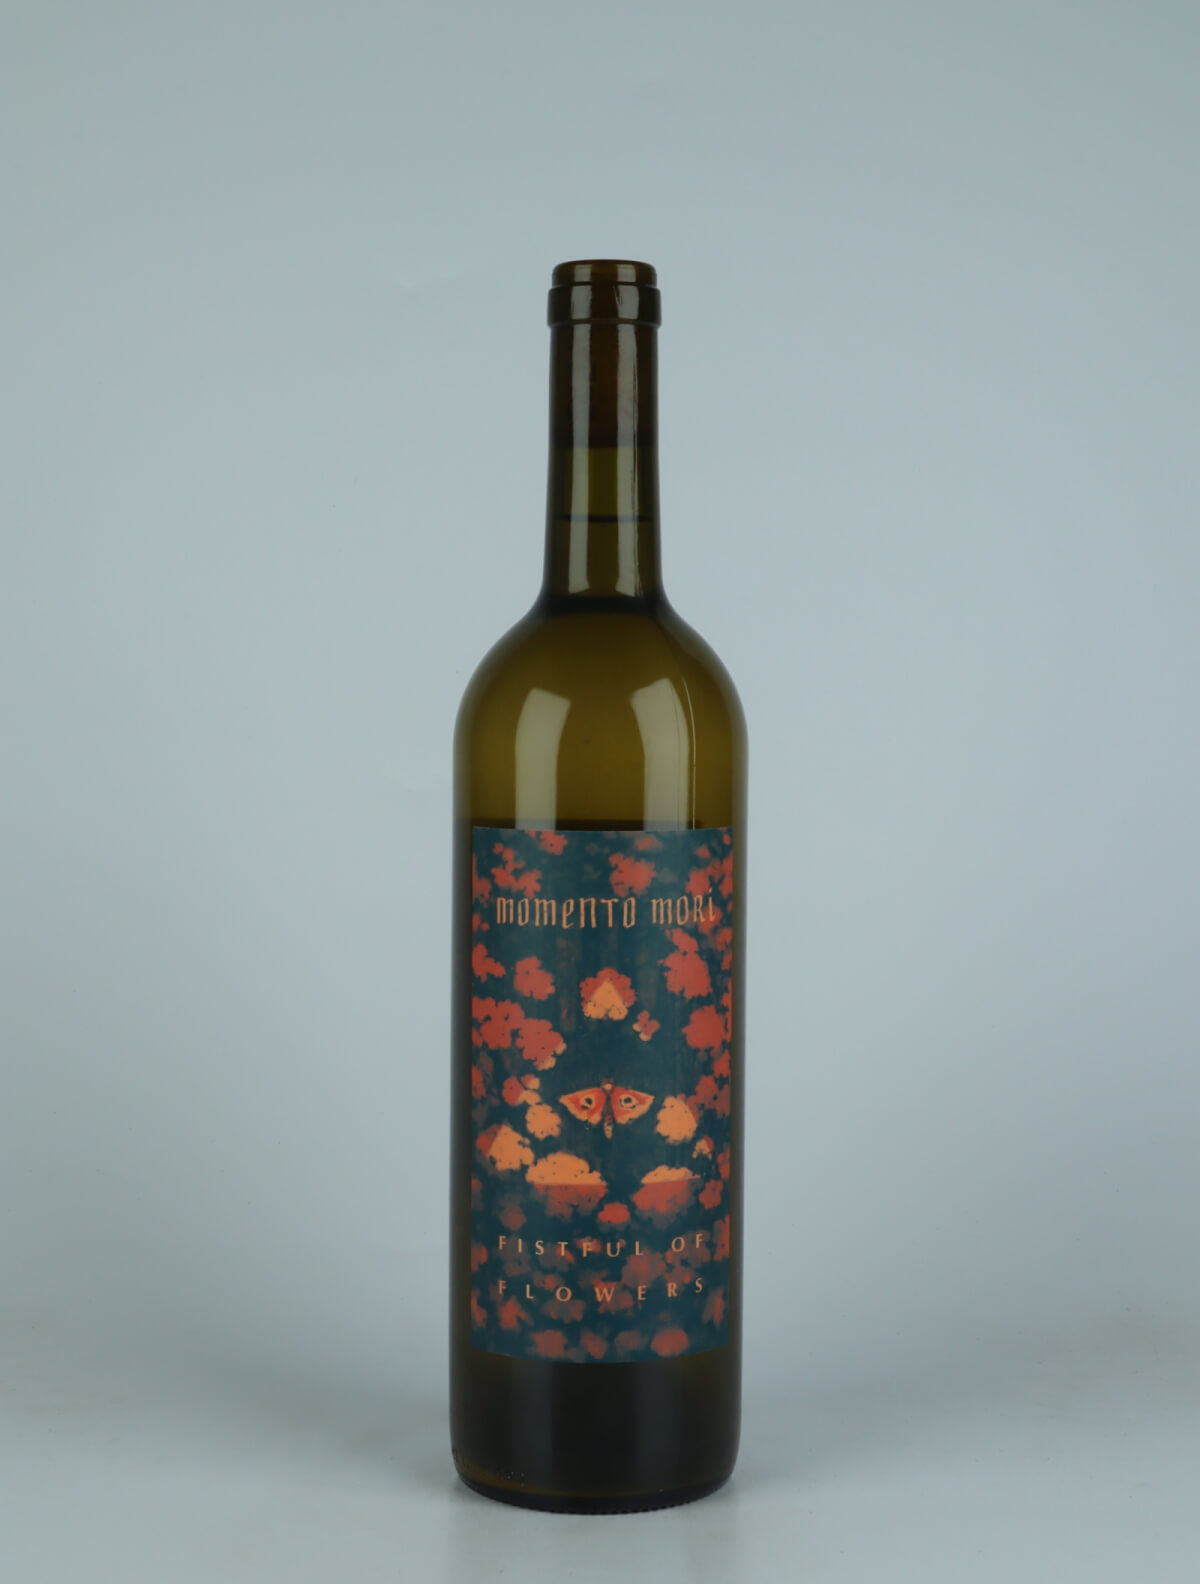 A bottle 2023 Fistful of Flowers Orange wine from Momento Mori, Victoria in Australia